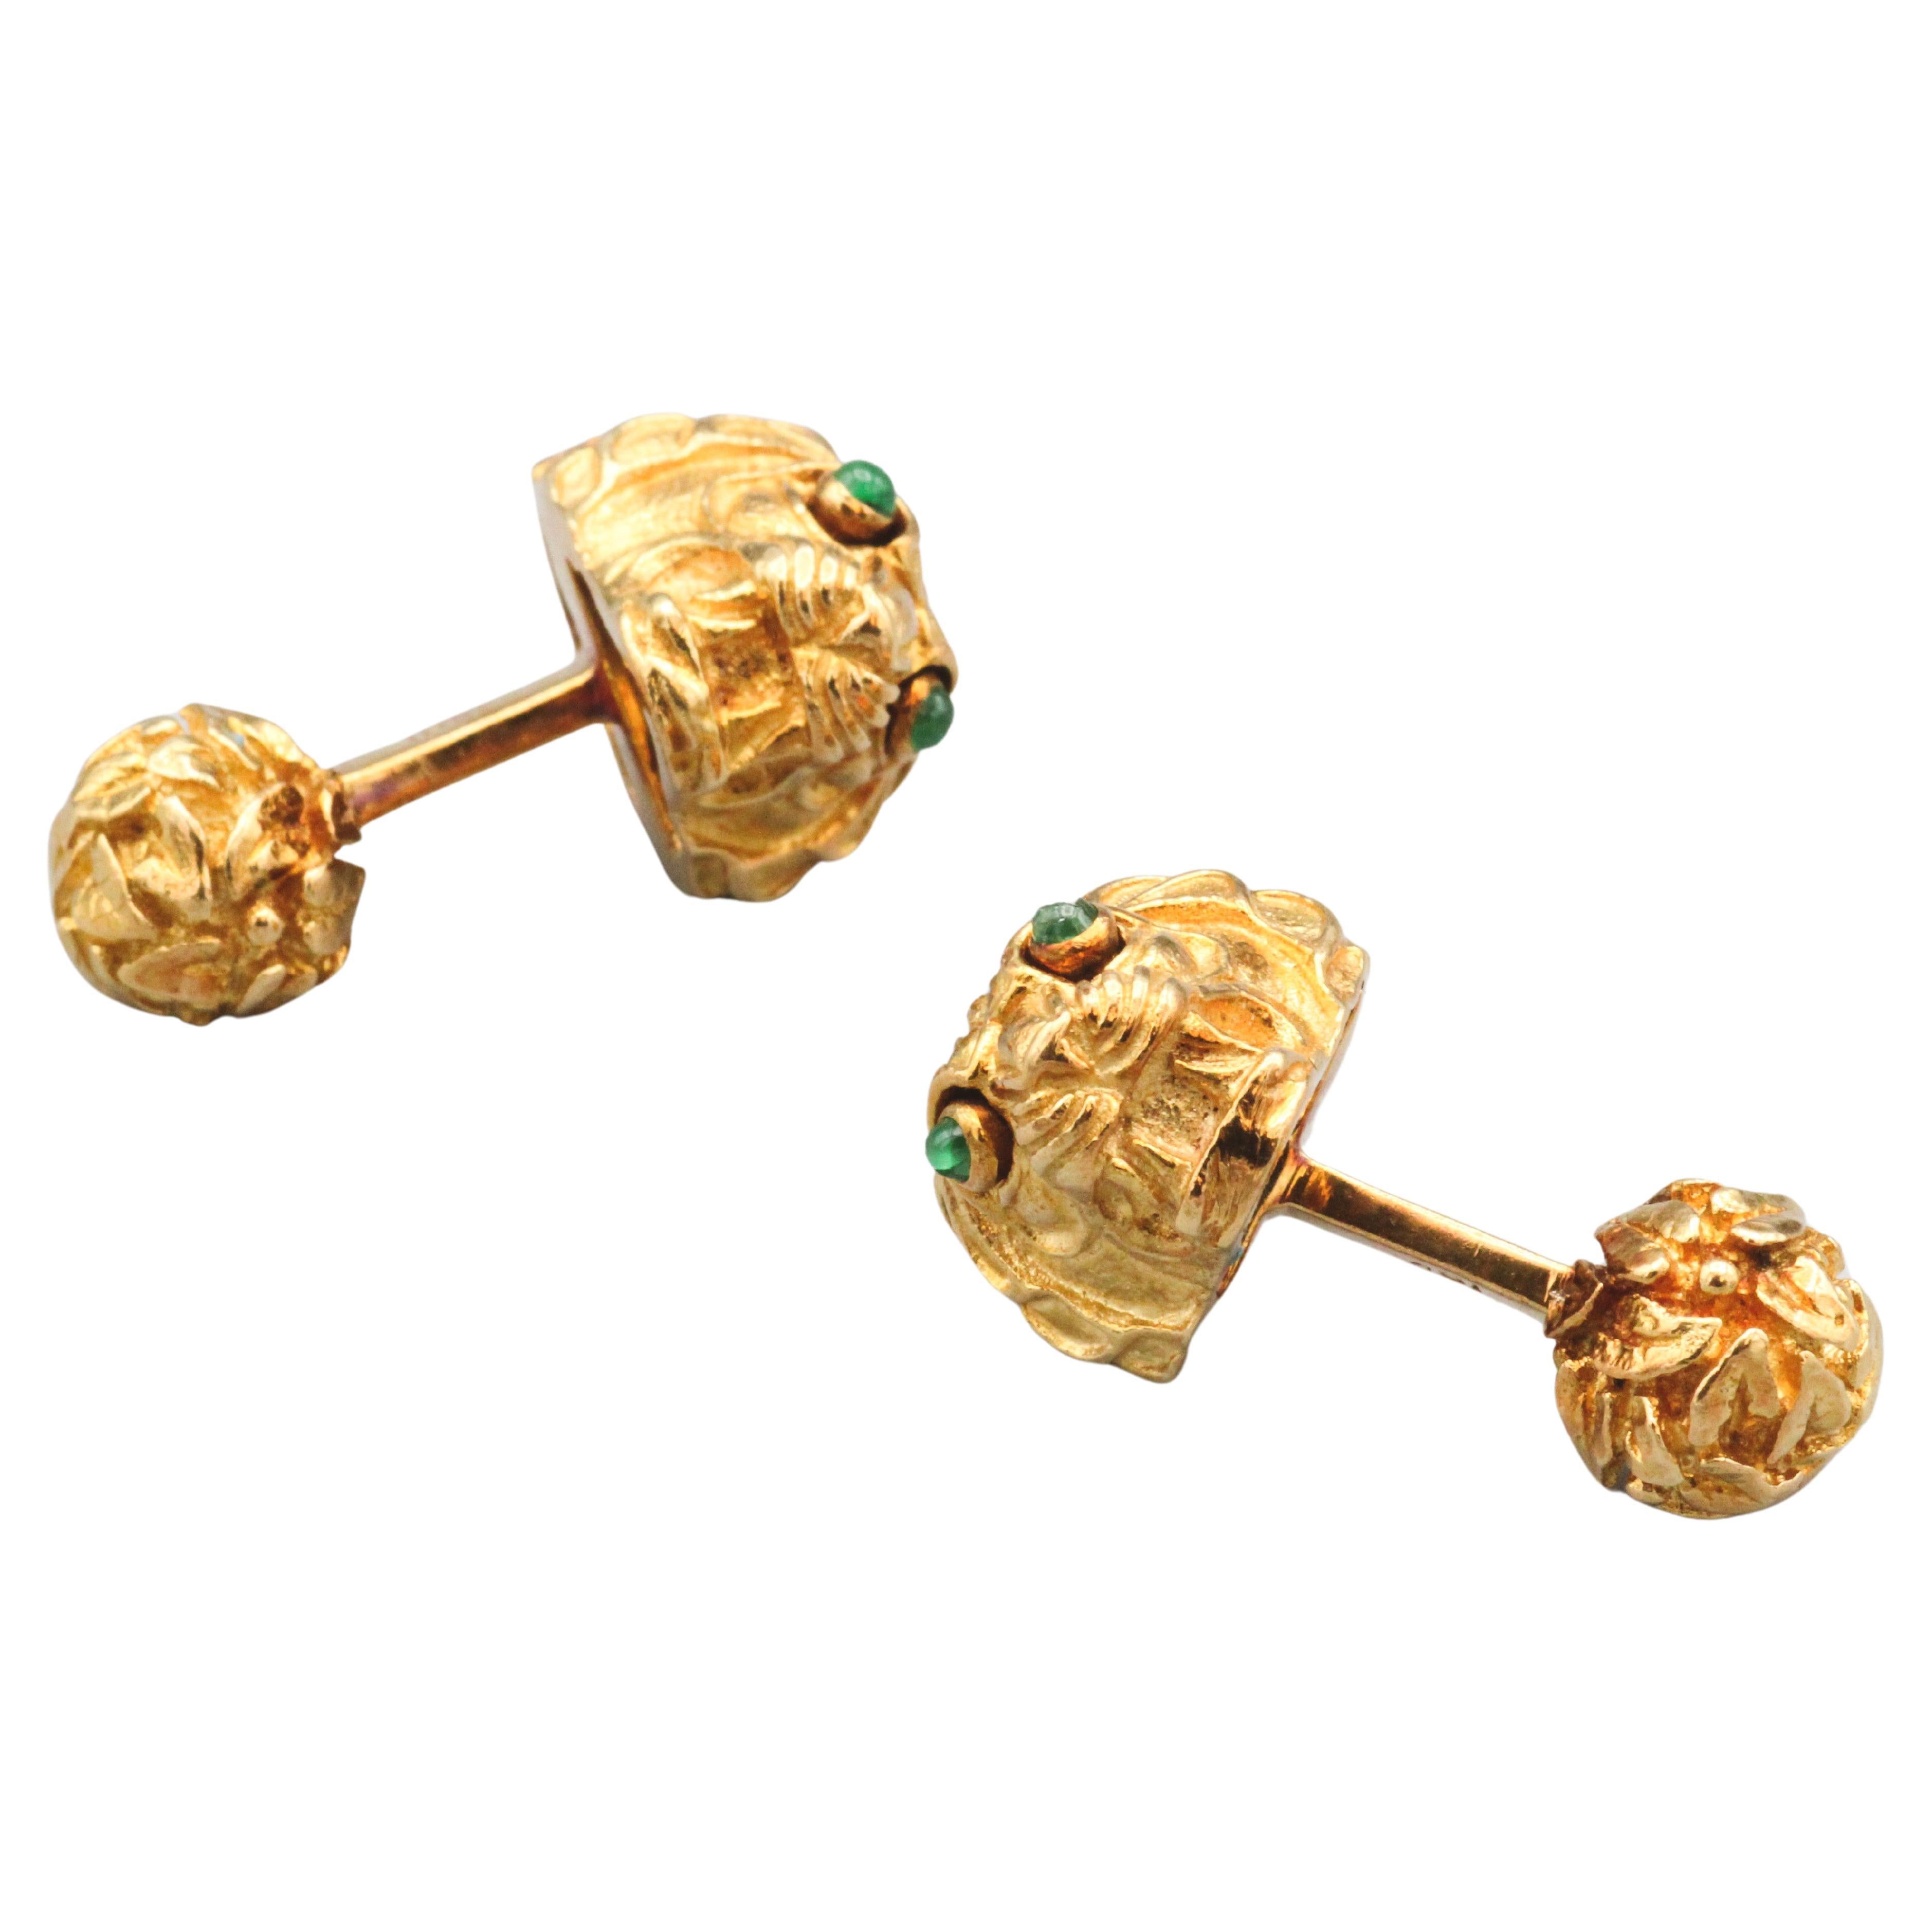 Treten Sie ein in das Reich der königlichen Eleganz mit unseren David Webb Vintage Emerald 18k Gold Lion Head Cufflinks. Diese Manschettenknöpfe sind ein Beweis für das ikonische Design und die herausragende Handwerkskunst von David Webb. Sie sind